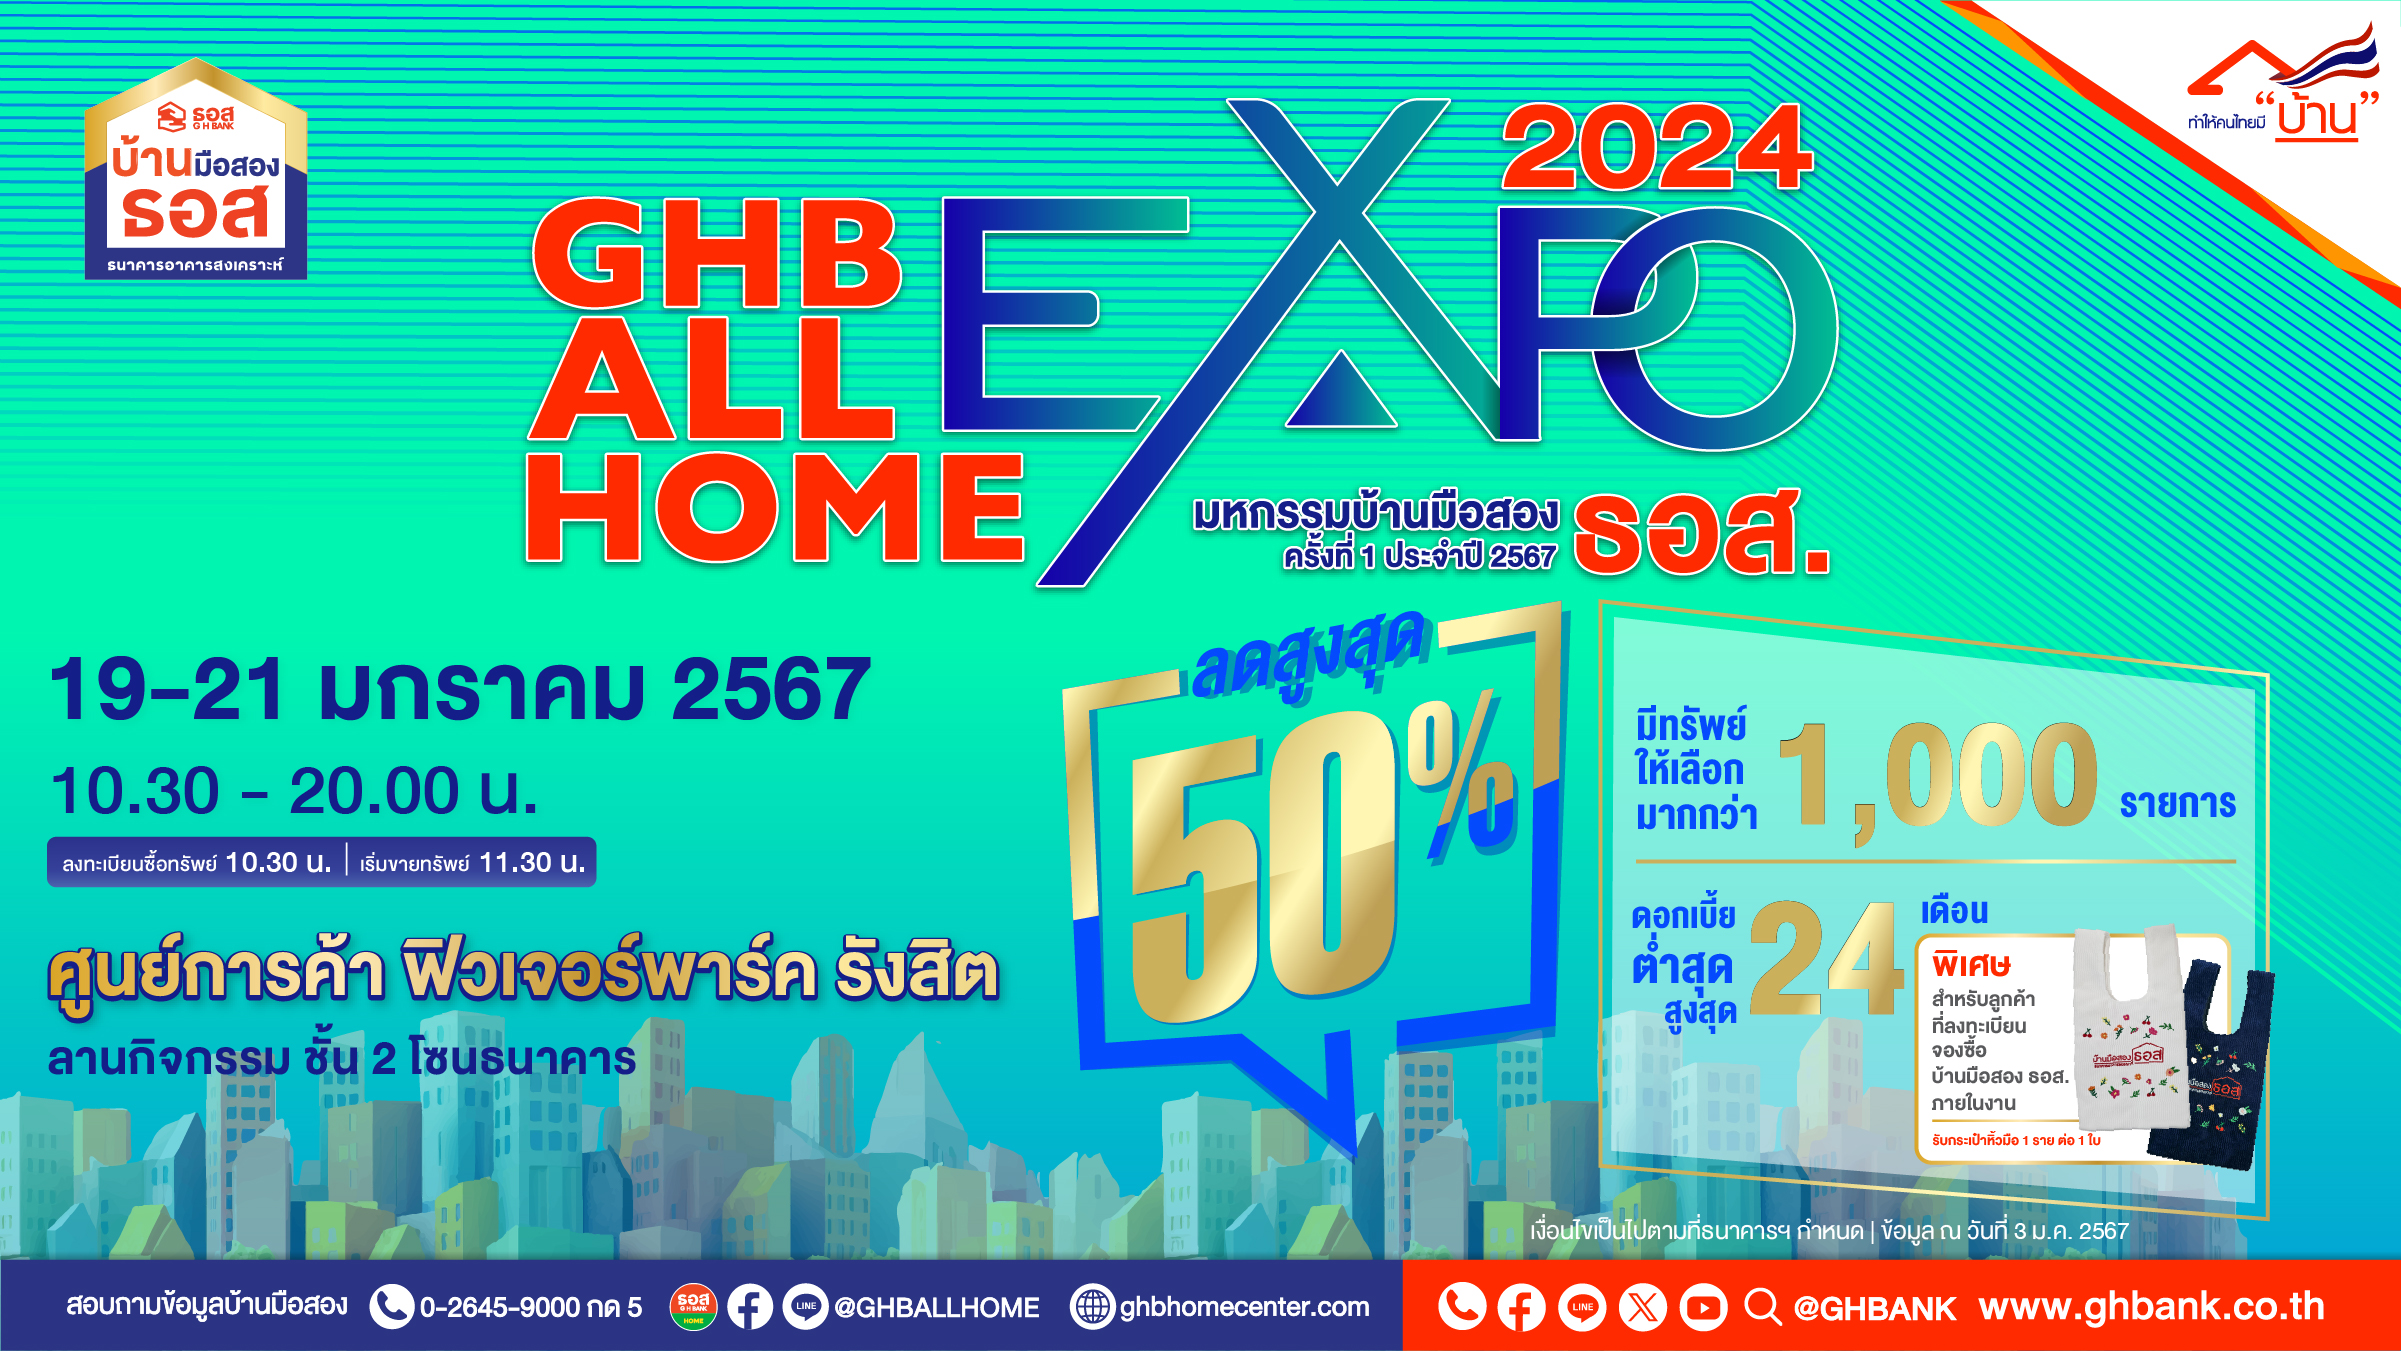 ธอส. ช่วยคนไทยมีบ้าน กับงาน GHB ALL HOME EXPO 2024 @ฟิวเจอร์พาร์ค รังสิตพบทรัพย์เด่นกว่า 1,000 รายการ ลดสูงสุด 50% ราคาต่ำสุดเพียง 45,000 บาท เท่านั้น!!